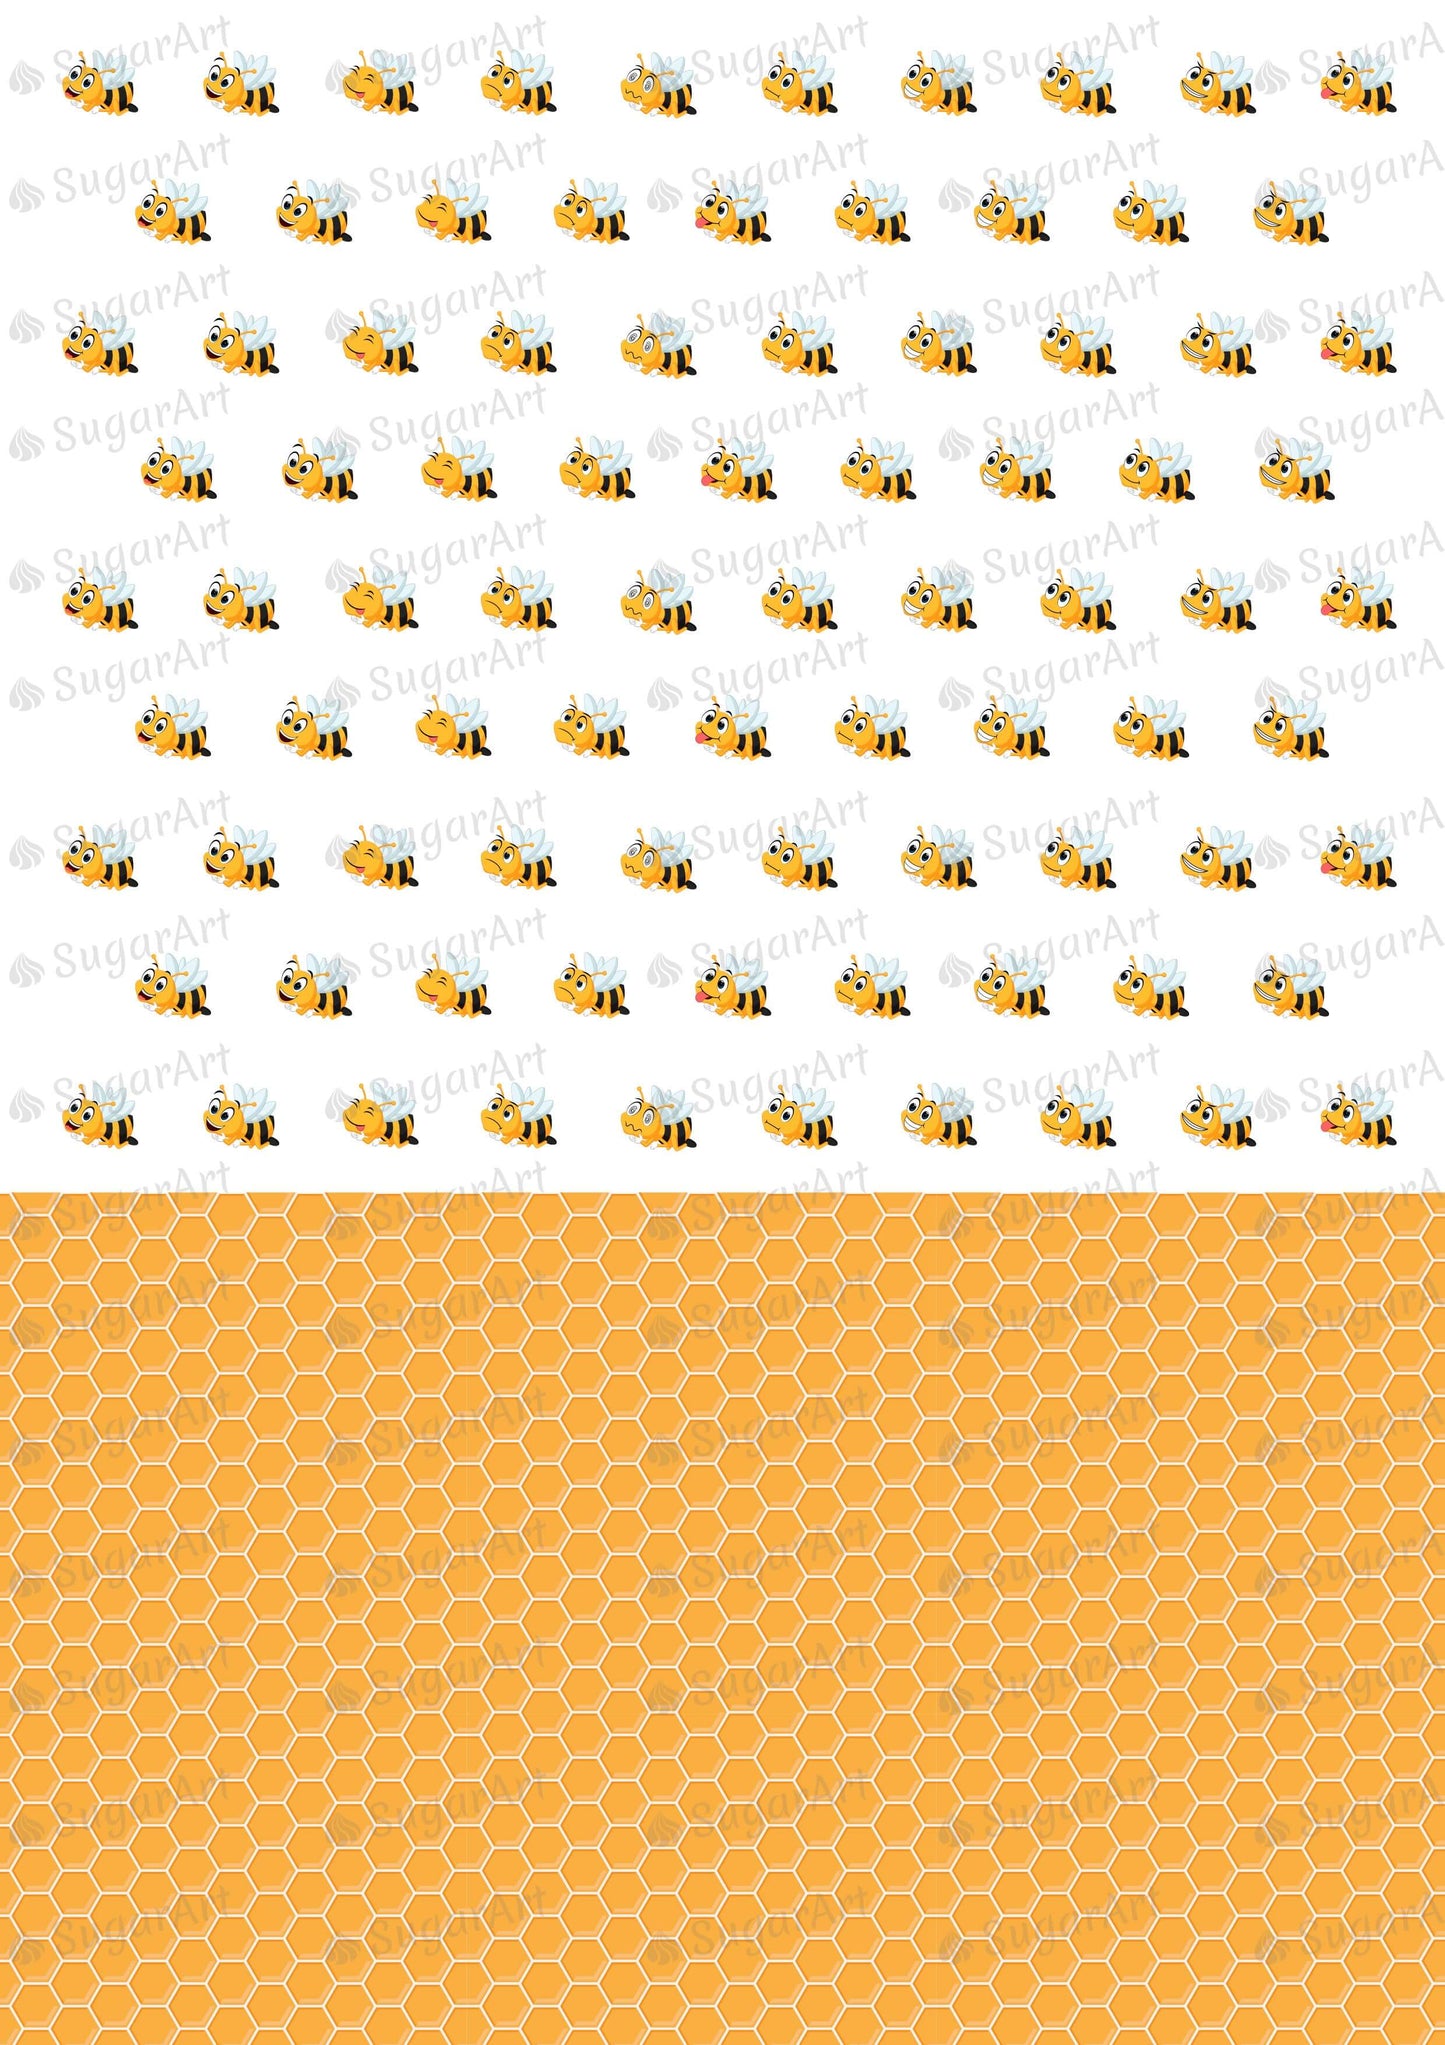 Tiny Bees and Honeycomb - 0.5 inch - ESA078-Sugar Stamp sheets-Sugar Art